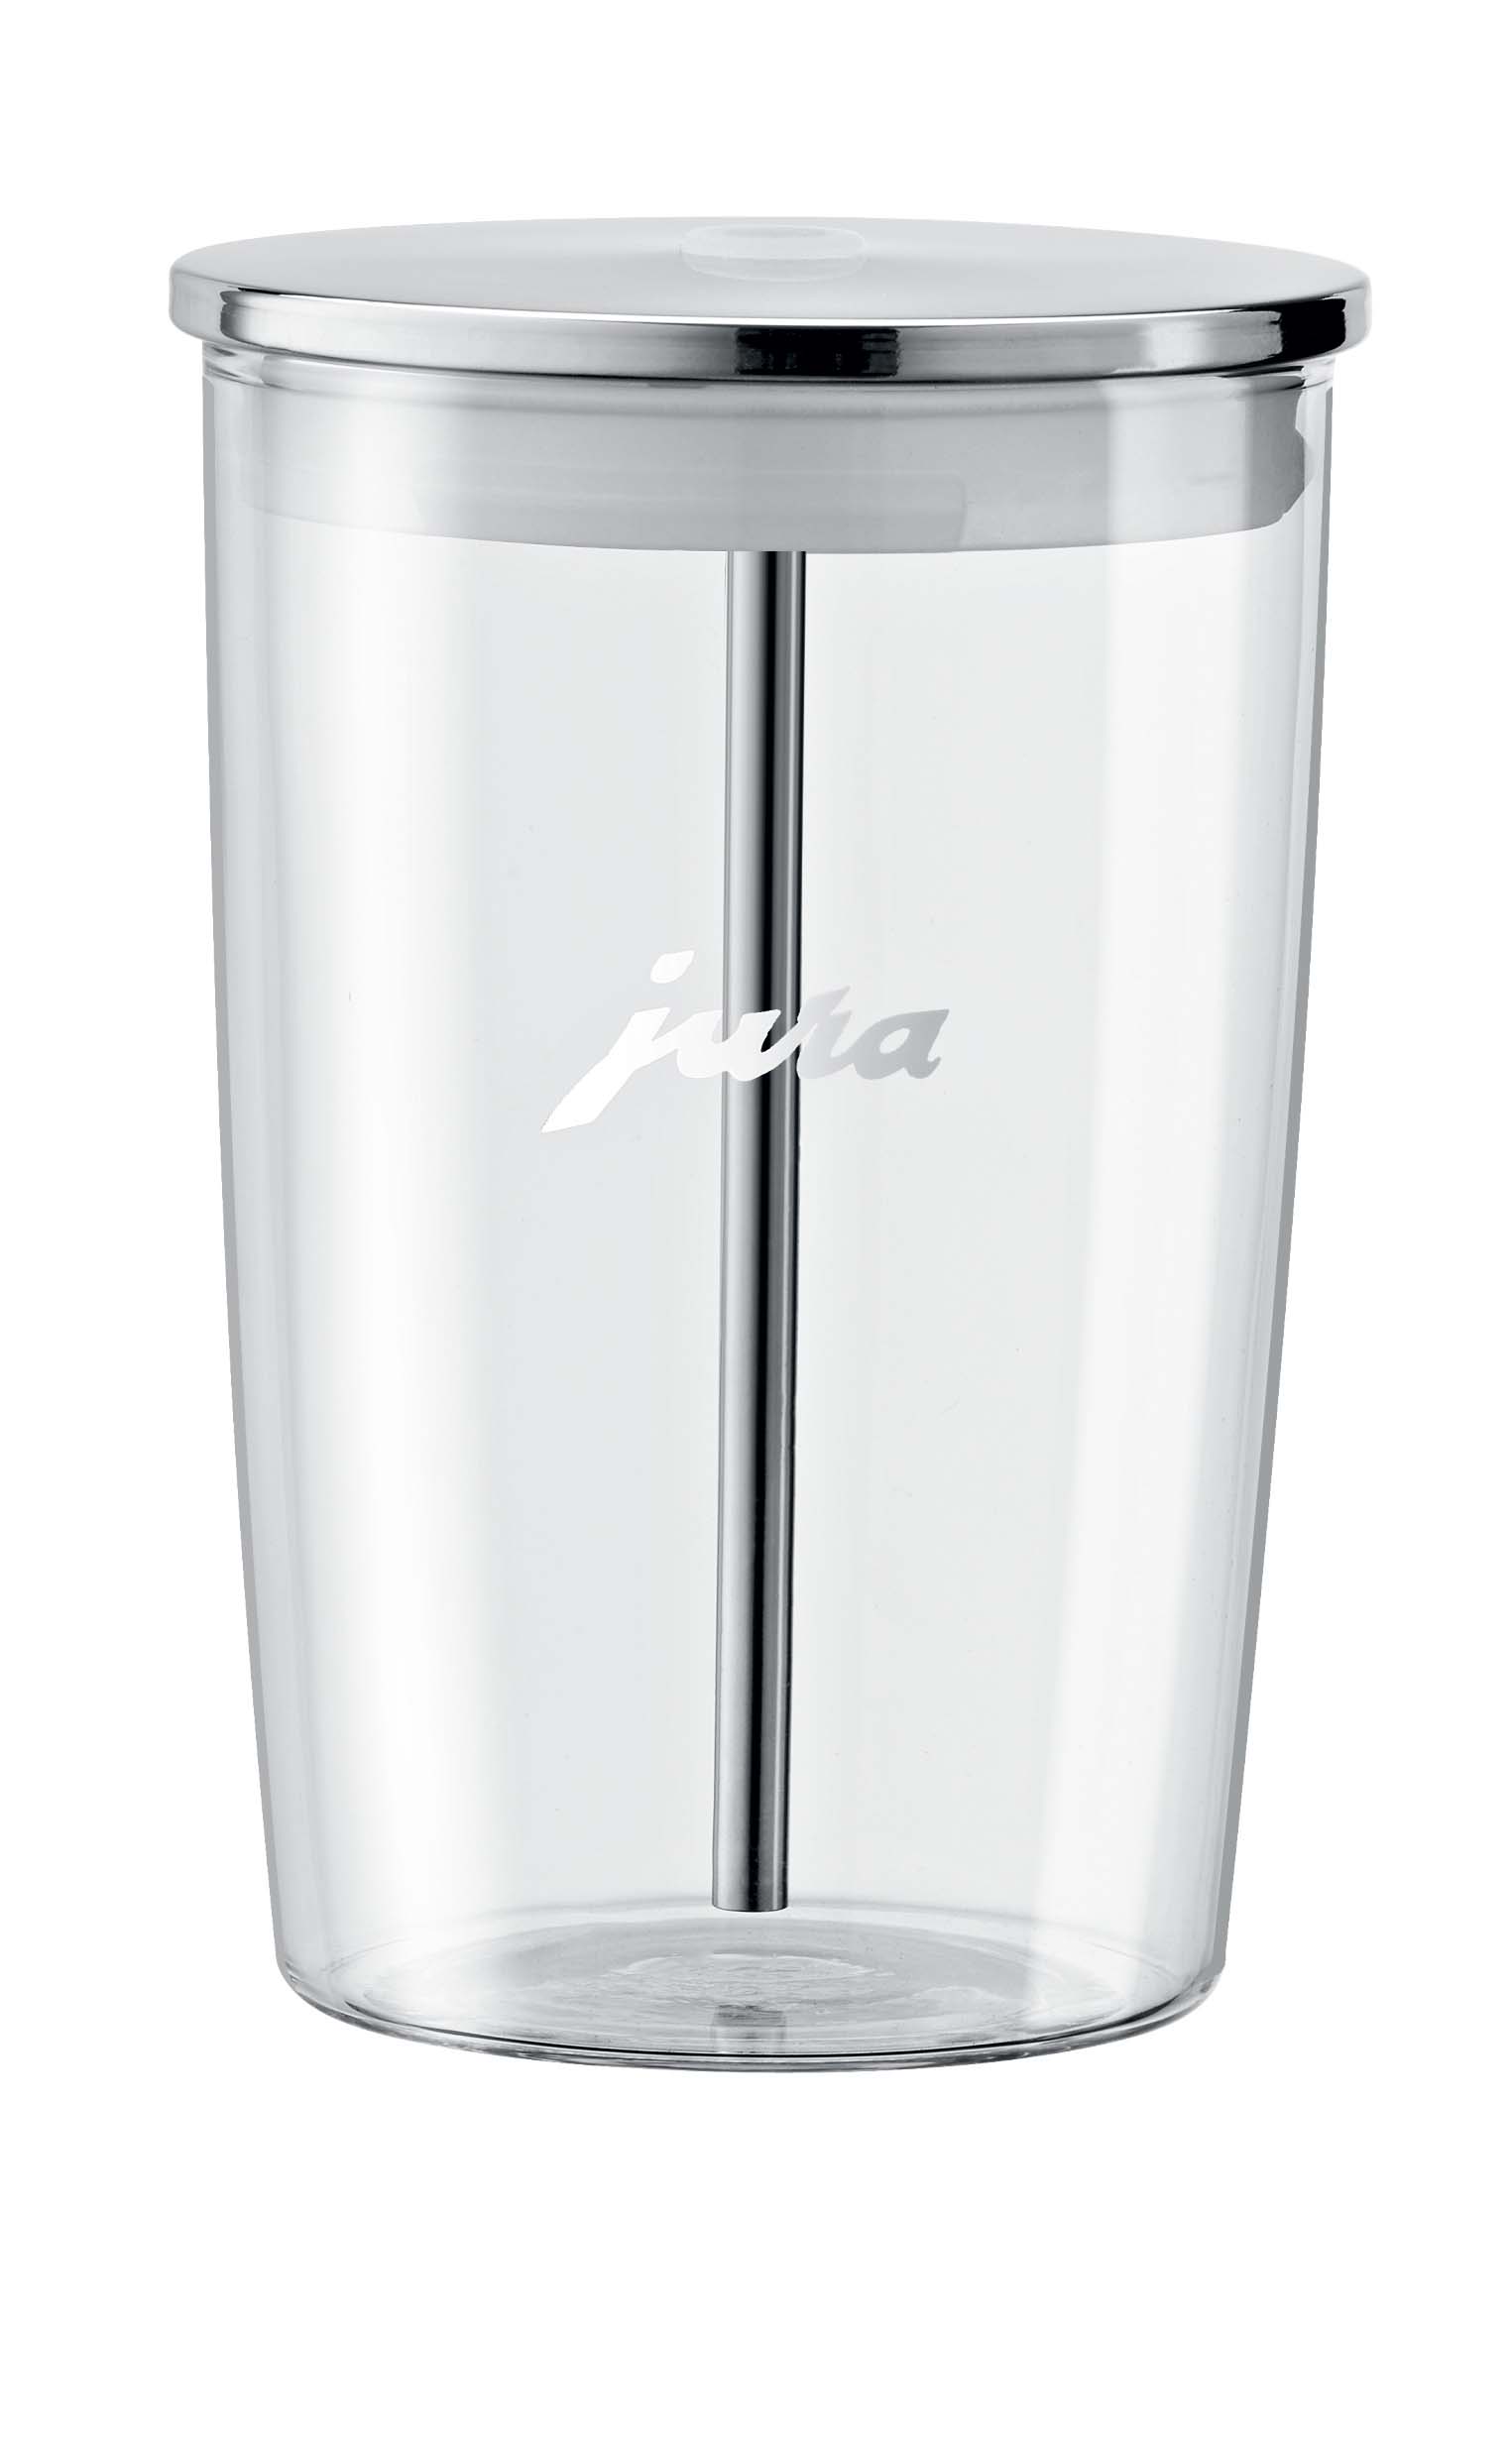 Jura milk container